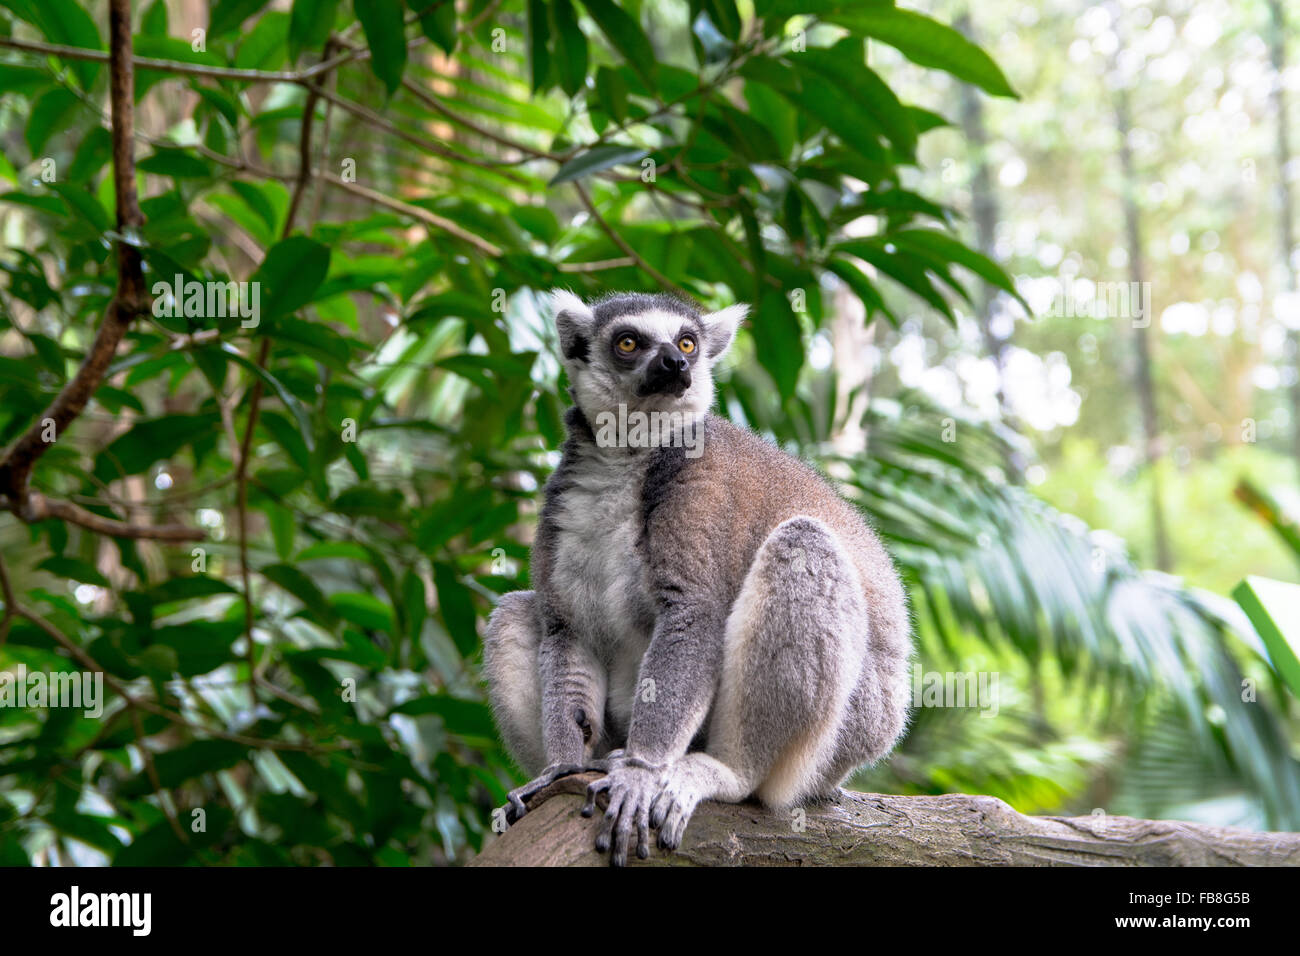 Close up image of sitting lémurien dans la forêt Banque D'Images